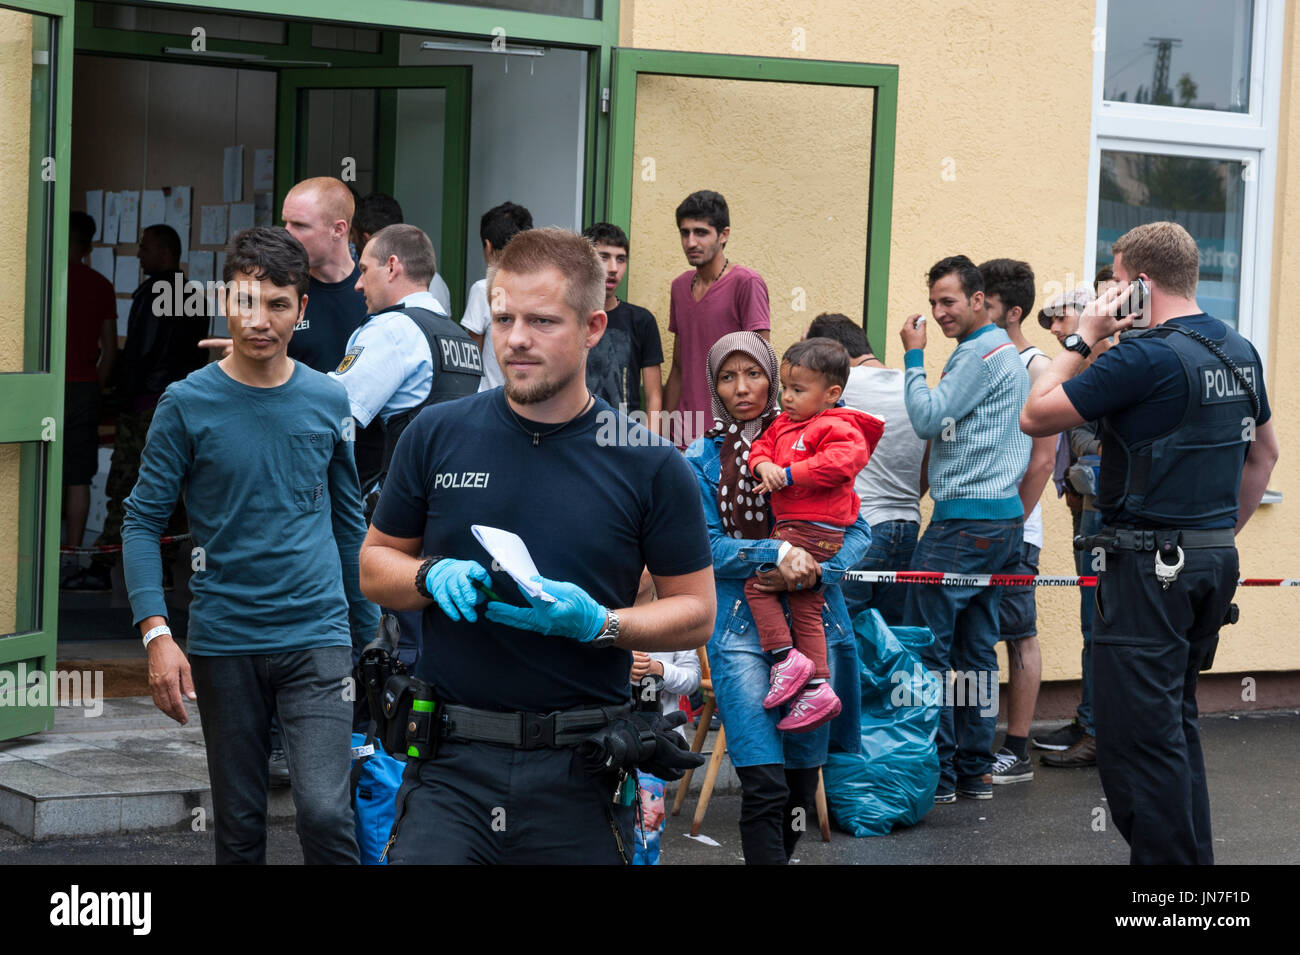 Passau, Allemagne - le 2 août 2015 : réfugiés en attente pour s'inscrire à l'asile dans un centre d'enregistrement des migrants bondés à Passau, Allemagne du sud, Banque D'Images